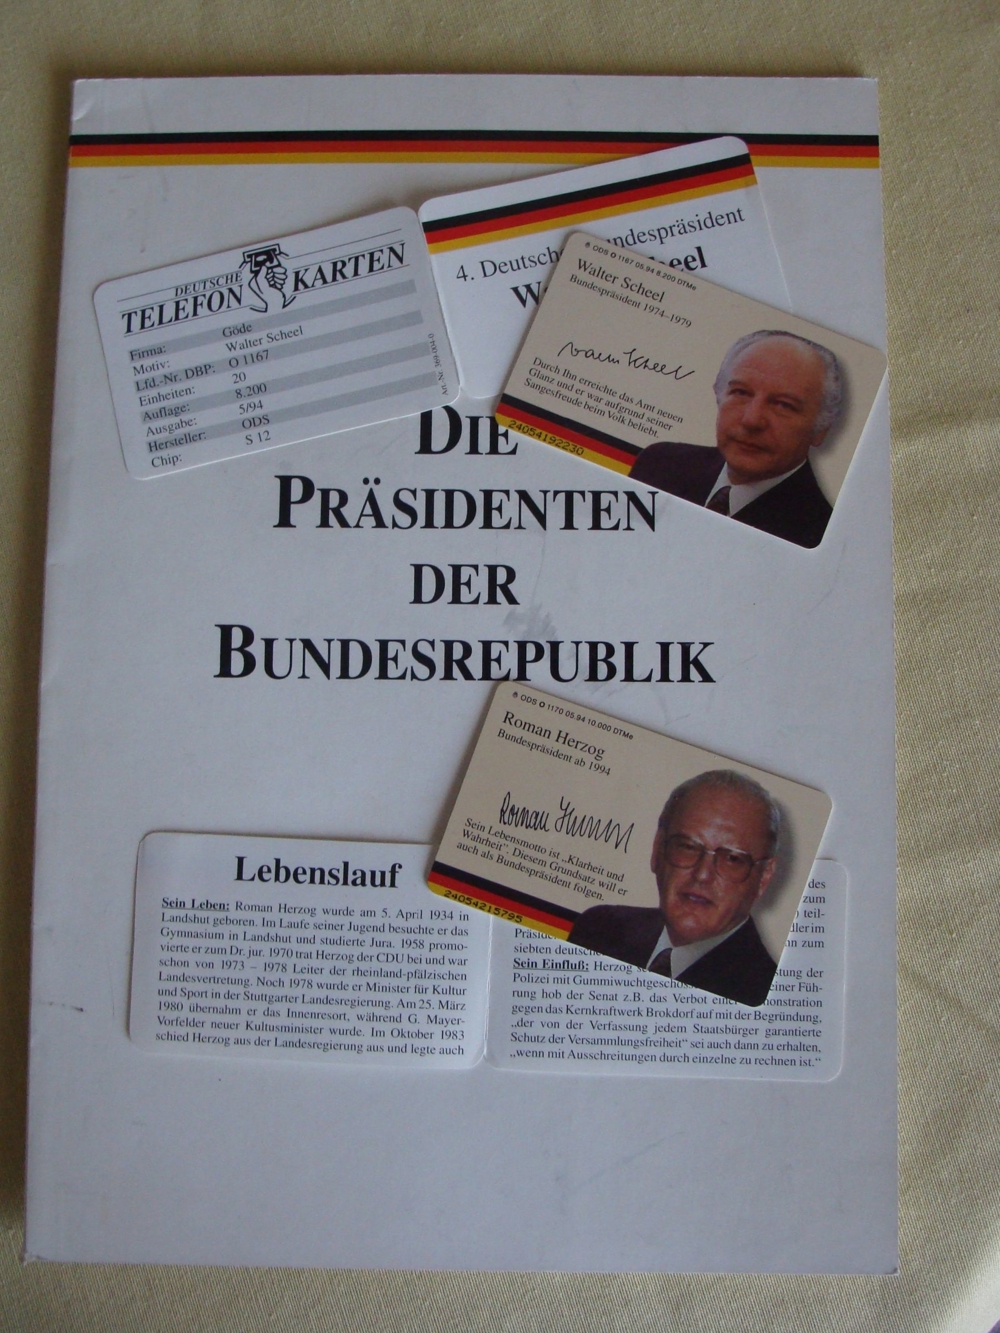 Telefonkarten "Präsidenten der BRD" Herzog und Scheel